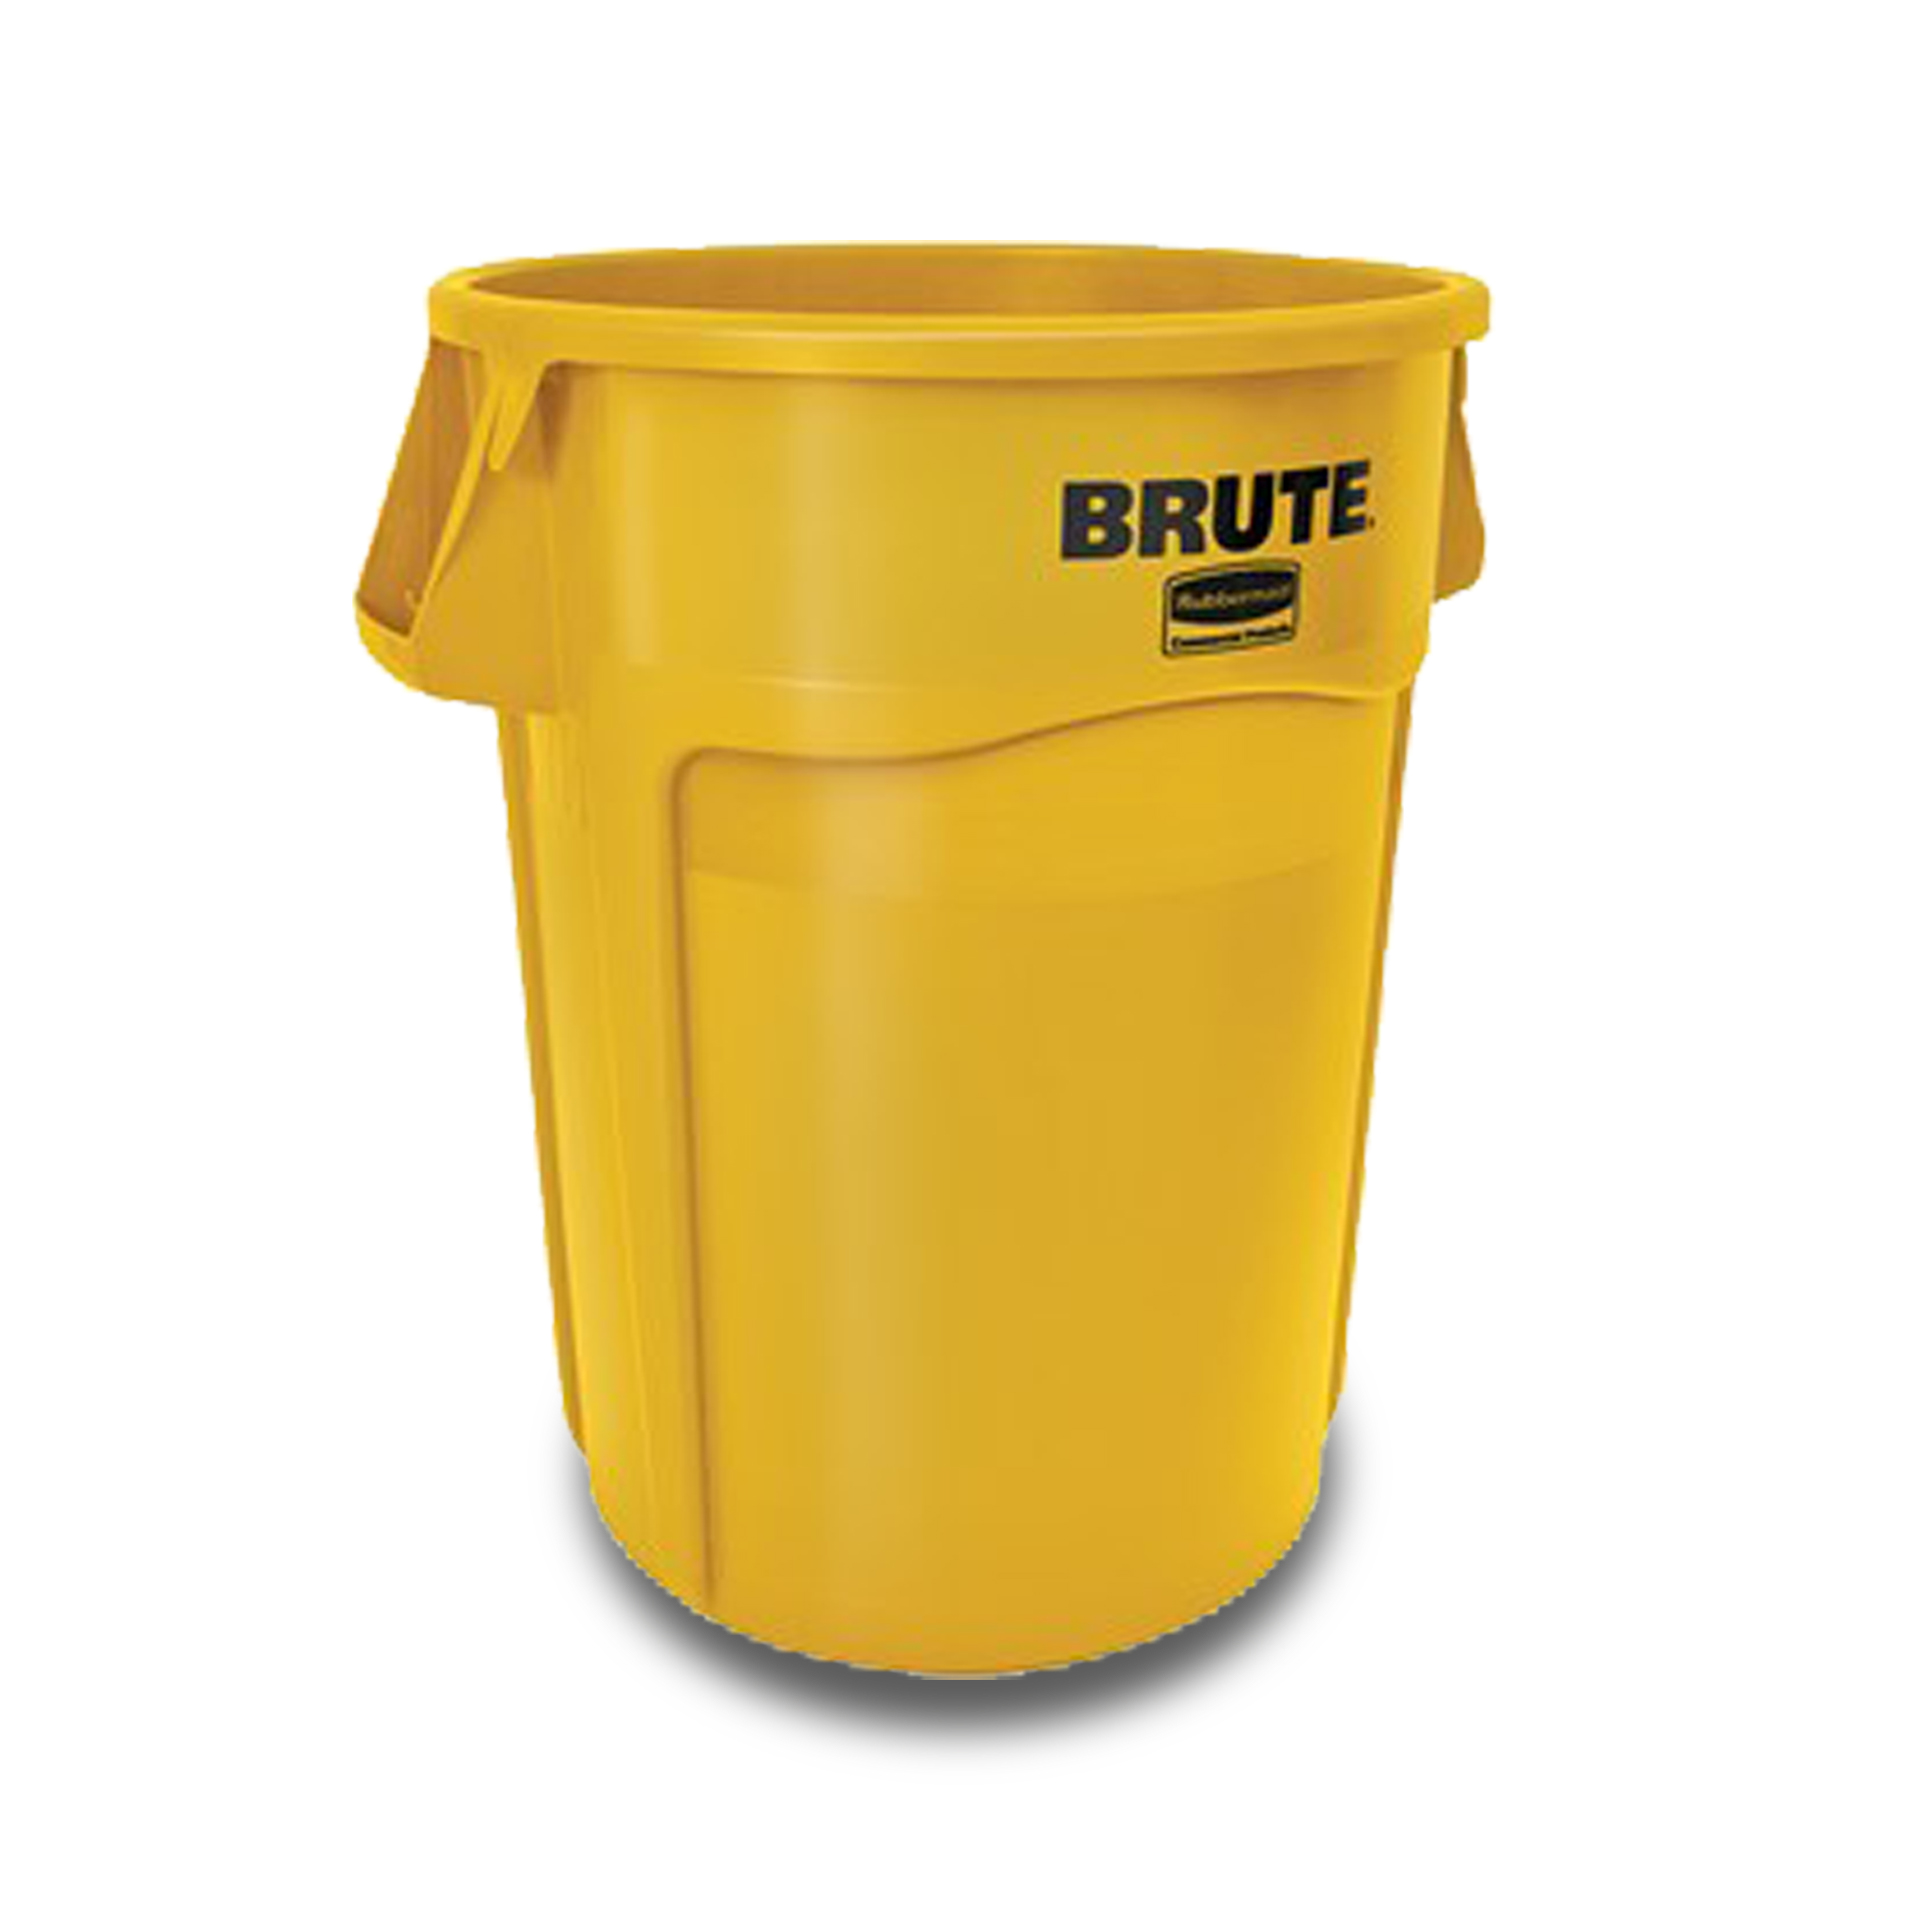 ถังอเนกประสงค์ ทรงกลม (ไม่รวมฝา) BRUTE™ ใส่อาหารได้ 208.2 ลิตร สีเหลือง